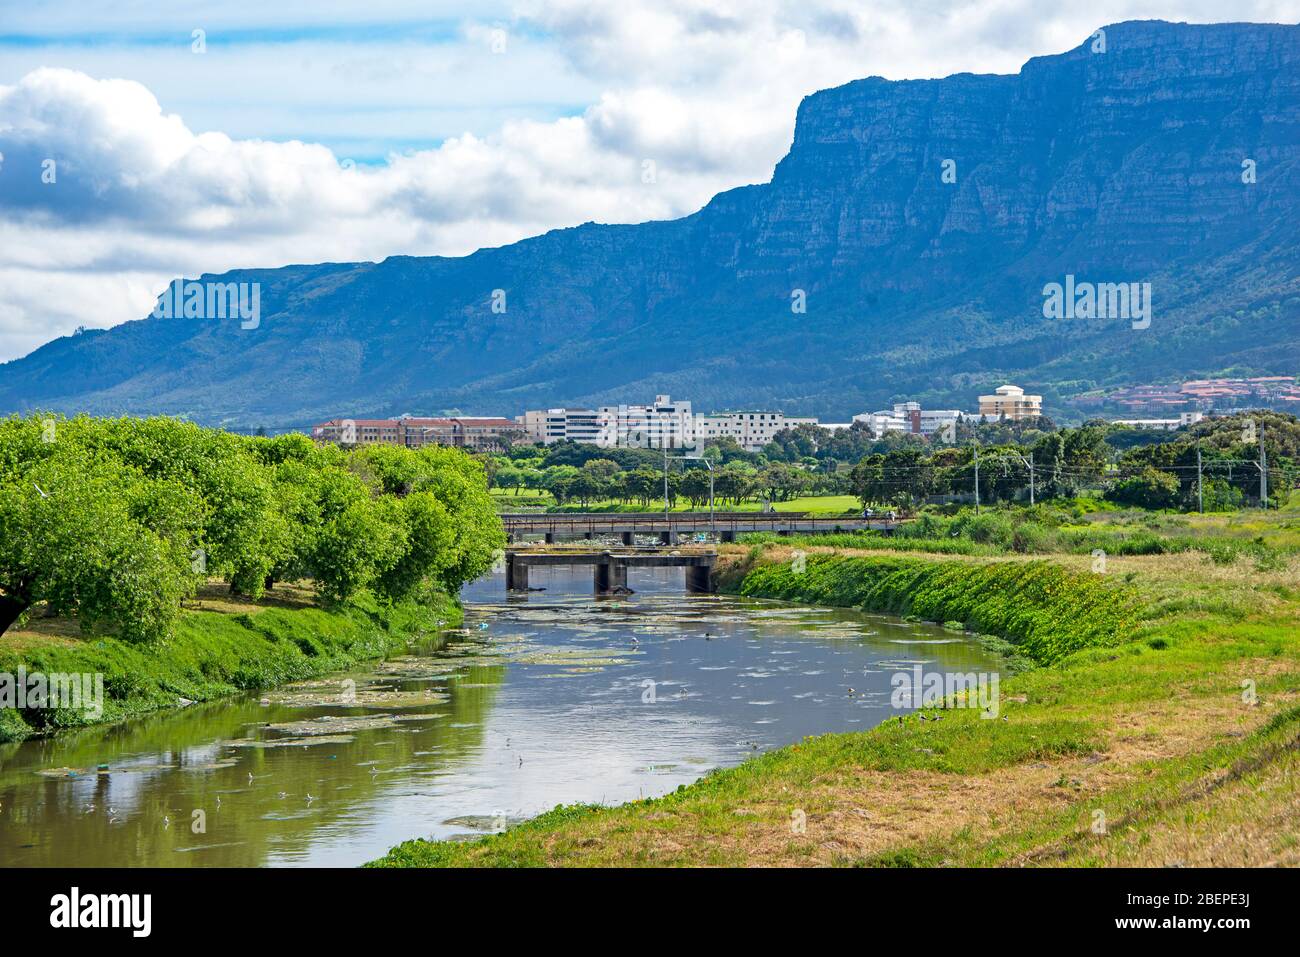 Les rives luxuriantes de la rivière Swart mènent au campus de l'Université du Cap à Rondebosch. La gamme Table Mountain se trouve derrière l'université. Beaucoup d'oiseaux qui se barboent peuvent être vus dans la rivière mais aussi beaucoup de pollution plastique. Banque D'Images